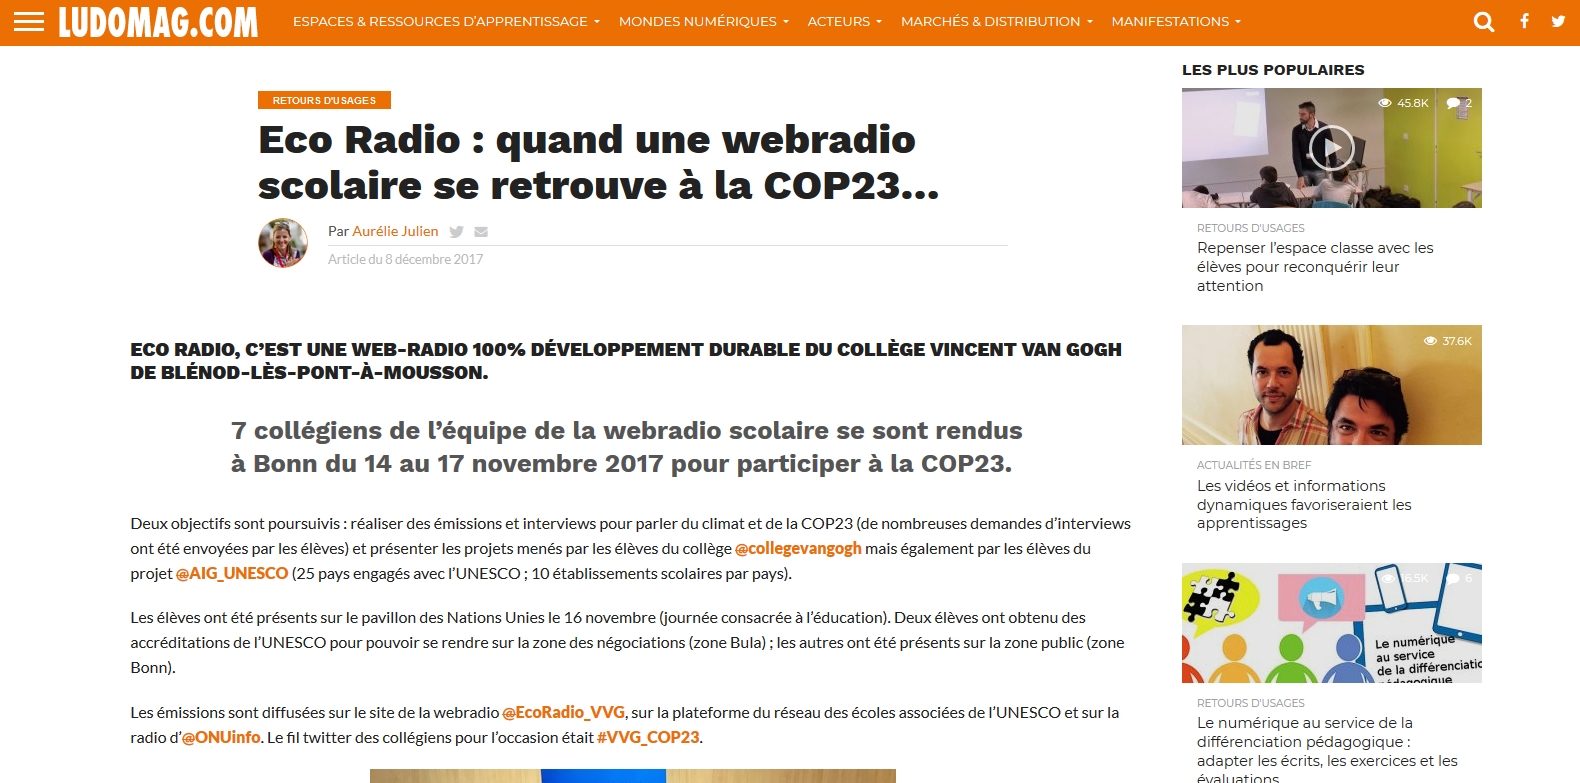 Article paru dans LUDOMAG le 8 décembre 2017 suite à la présence d'Eco Radio à la COP23